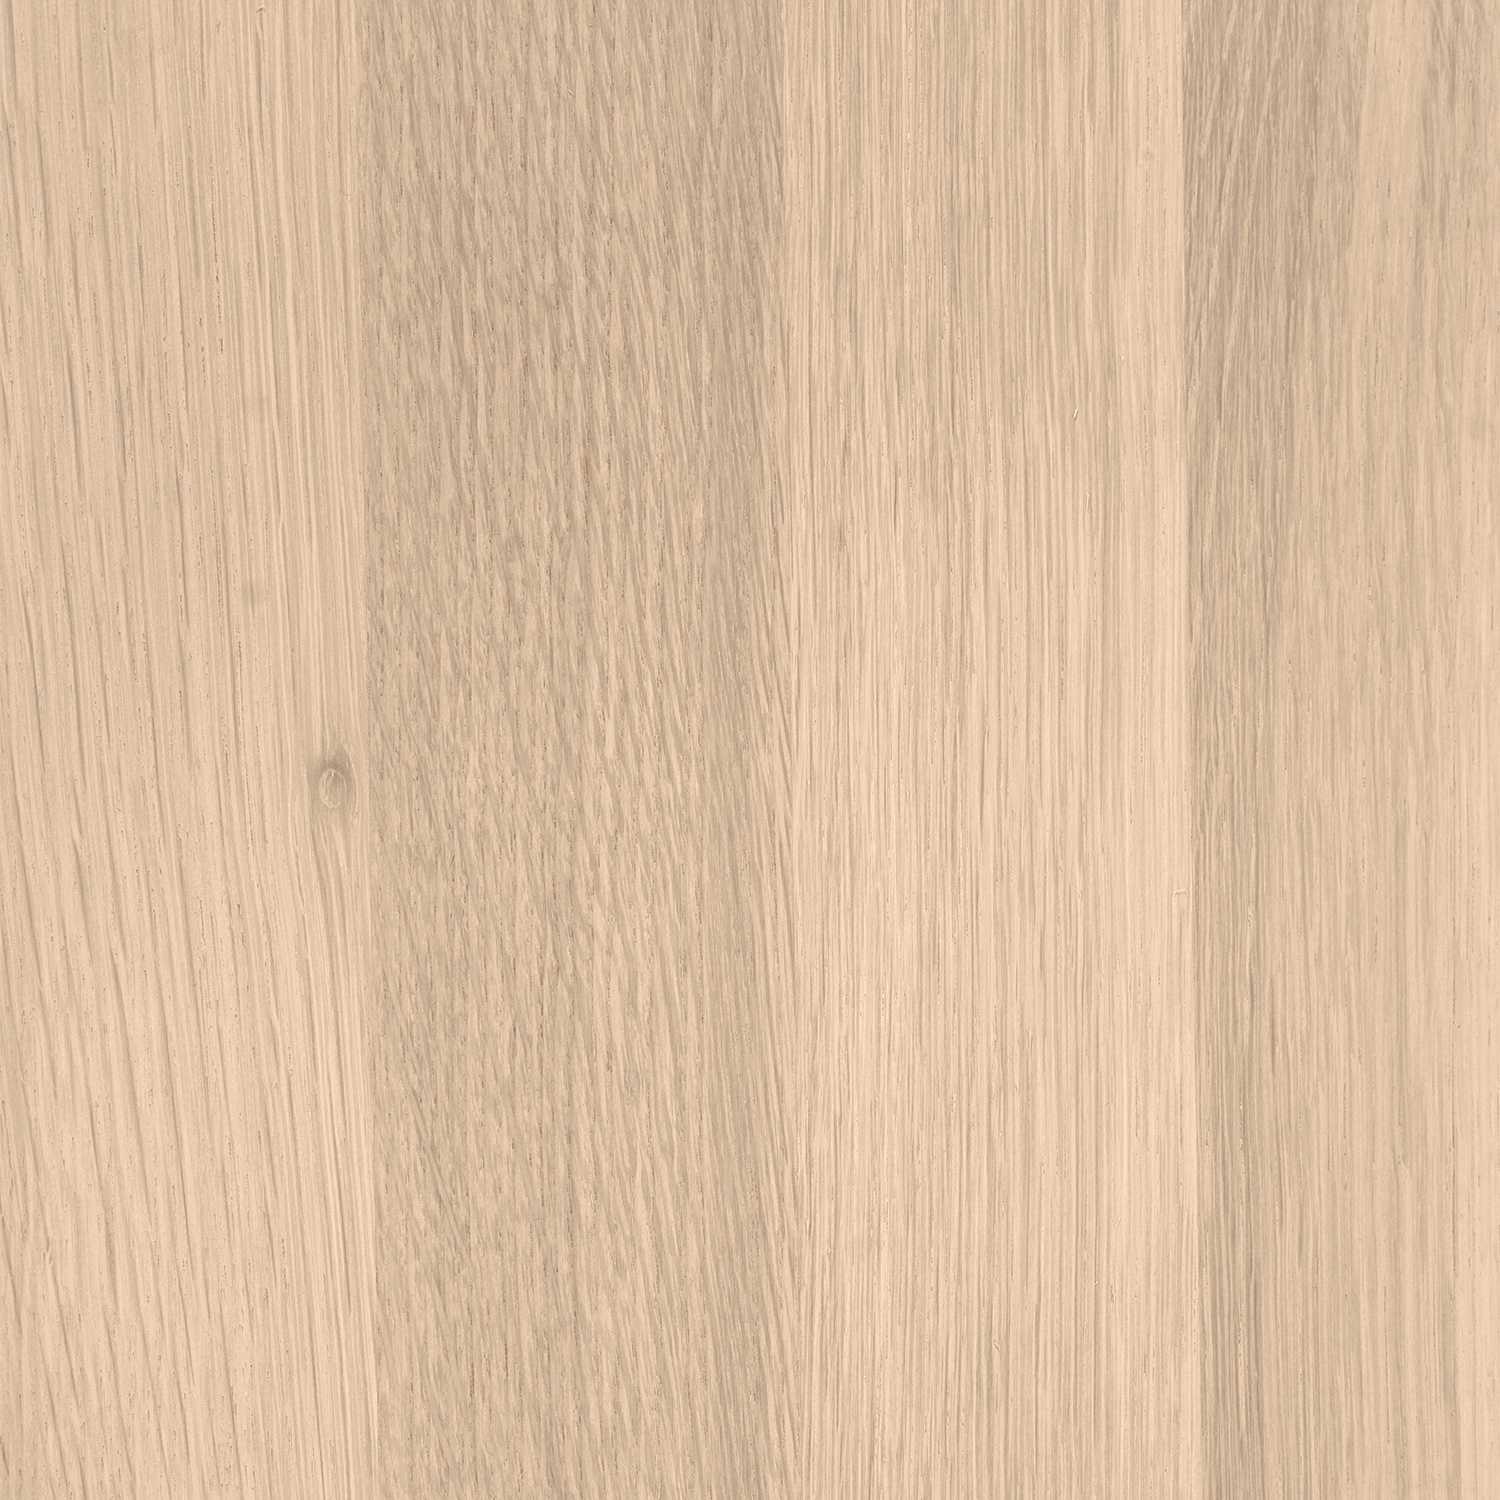  Leimholzplatte Eiche nach Maß - 4 cm dick -  inkl. Aussparung -  Eichenholz A-Qualität- Eiche Massivholzplatte - verleimt & künstlich getrocknet (HF 8-12%) - 15-120x20-300 cm